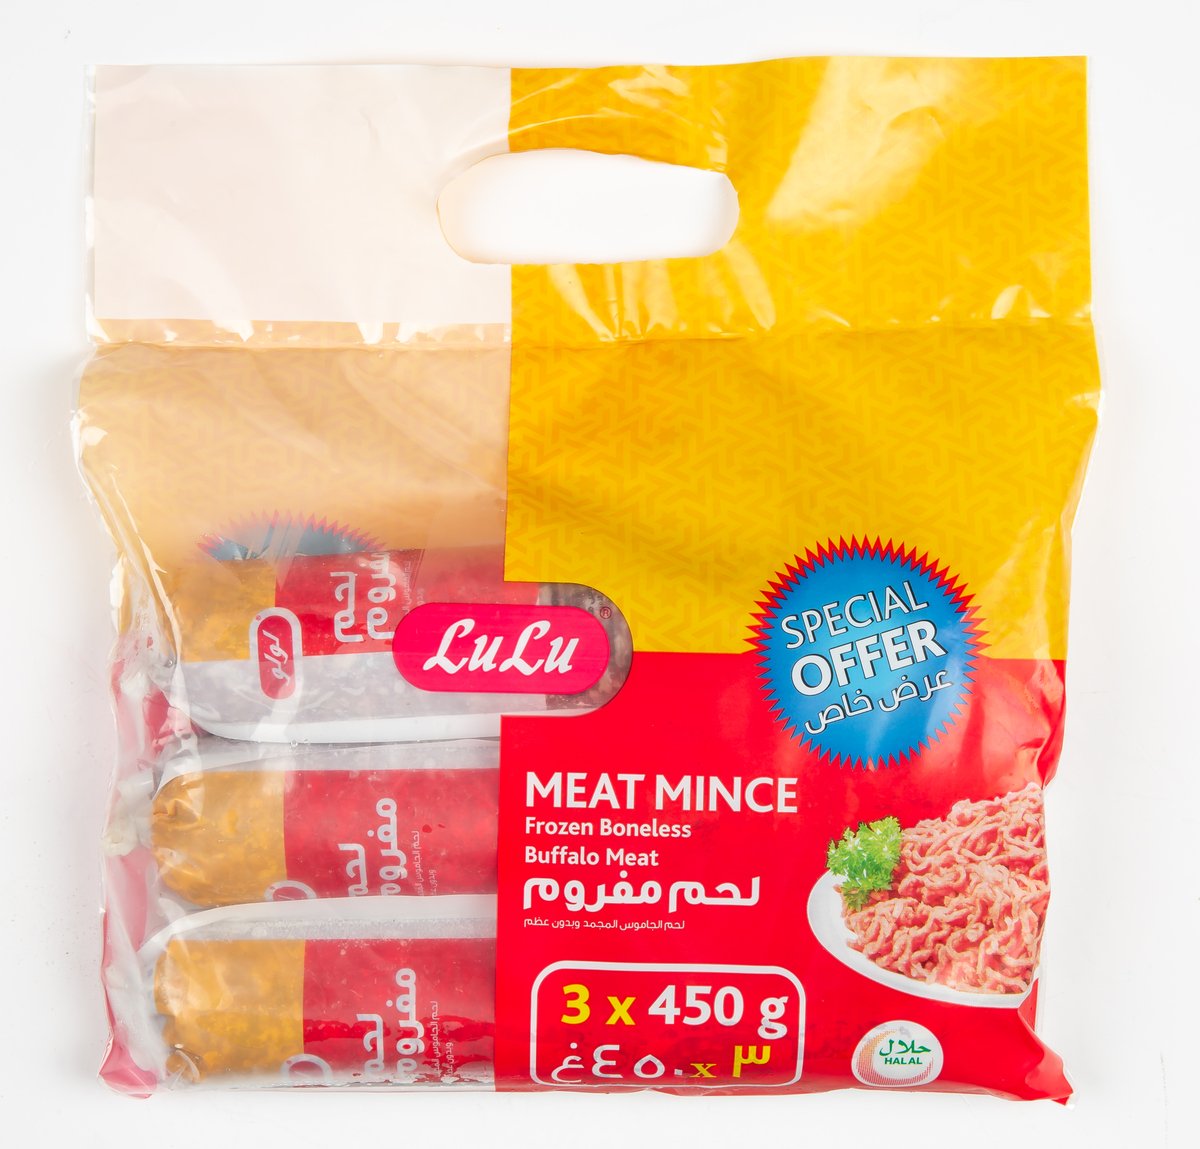 LuLu Frozen Meat Mince 3 x 450 g